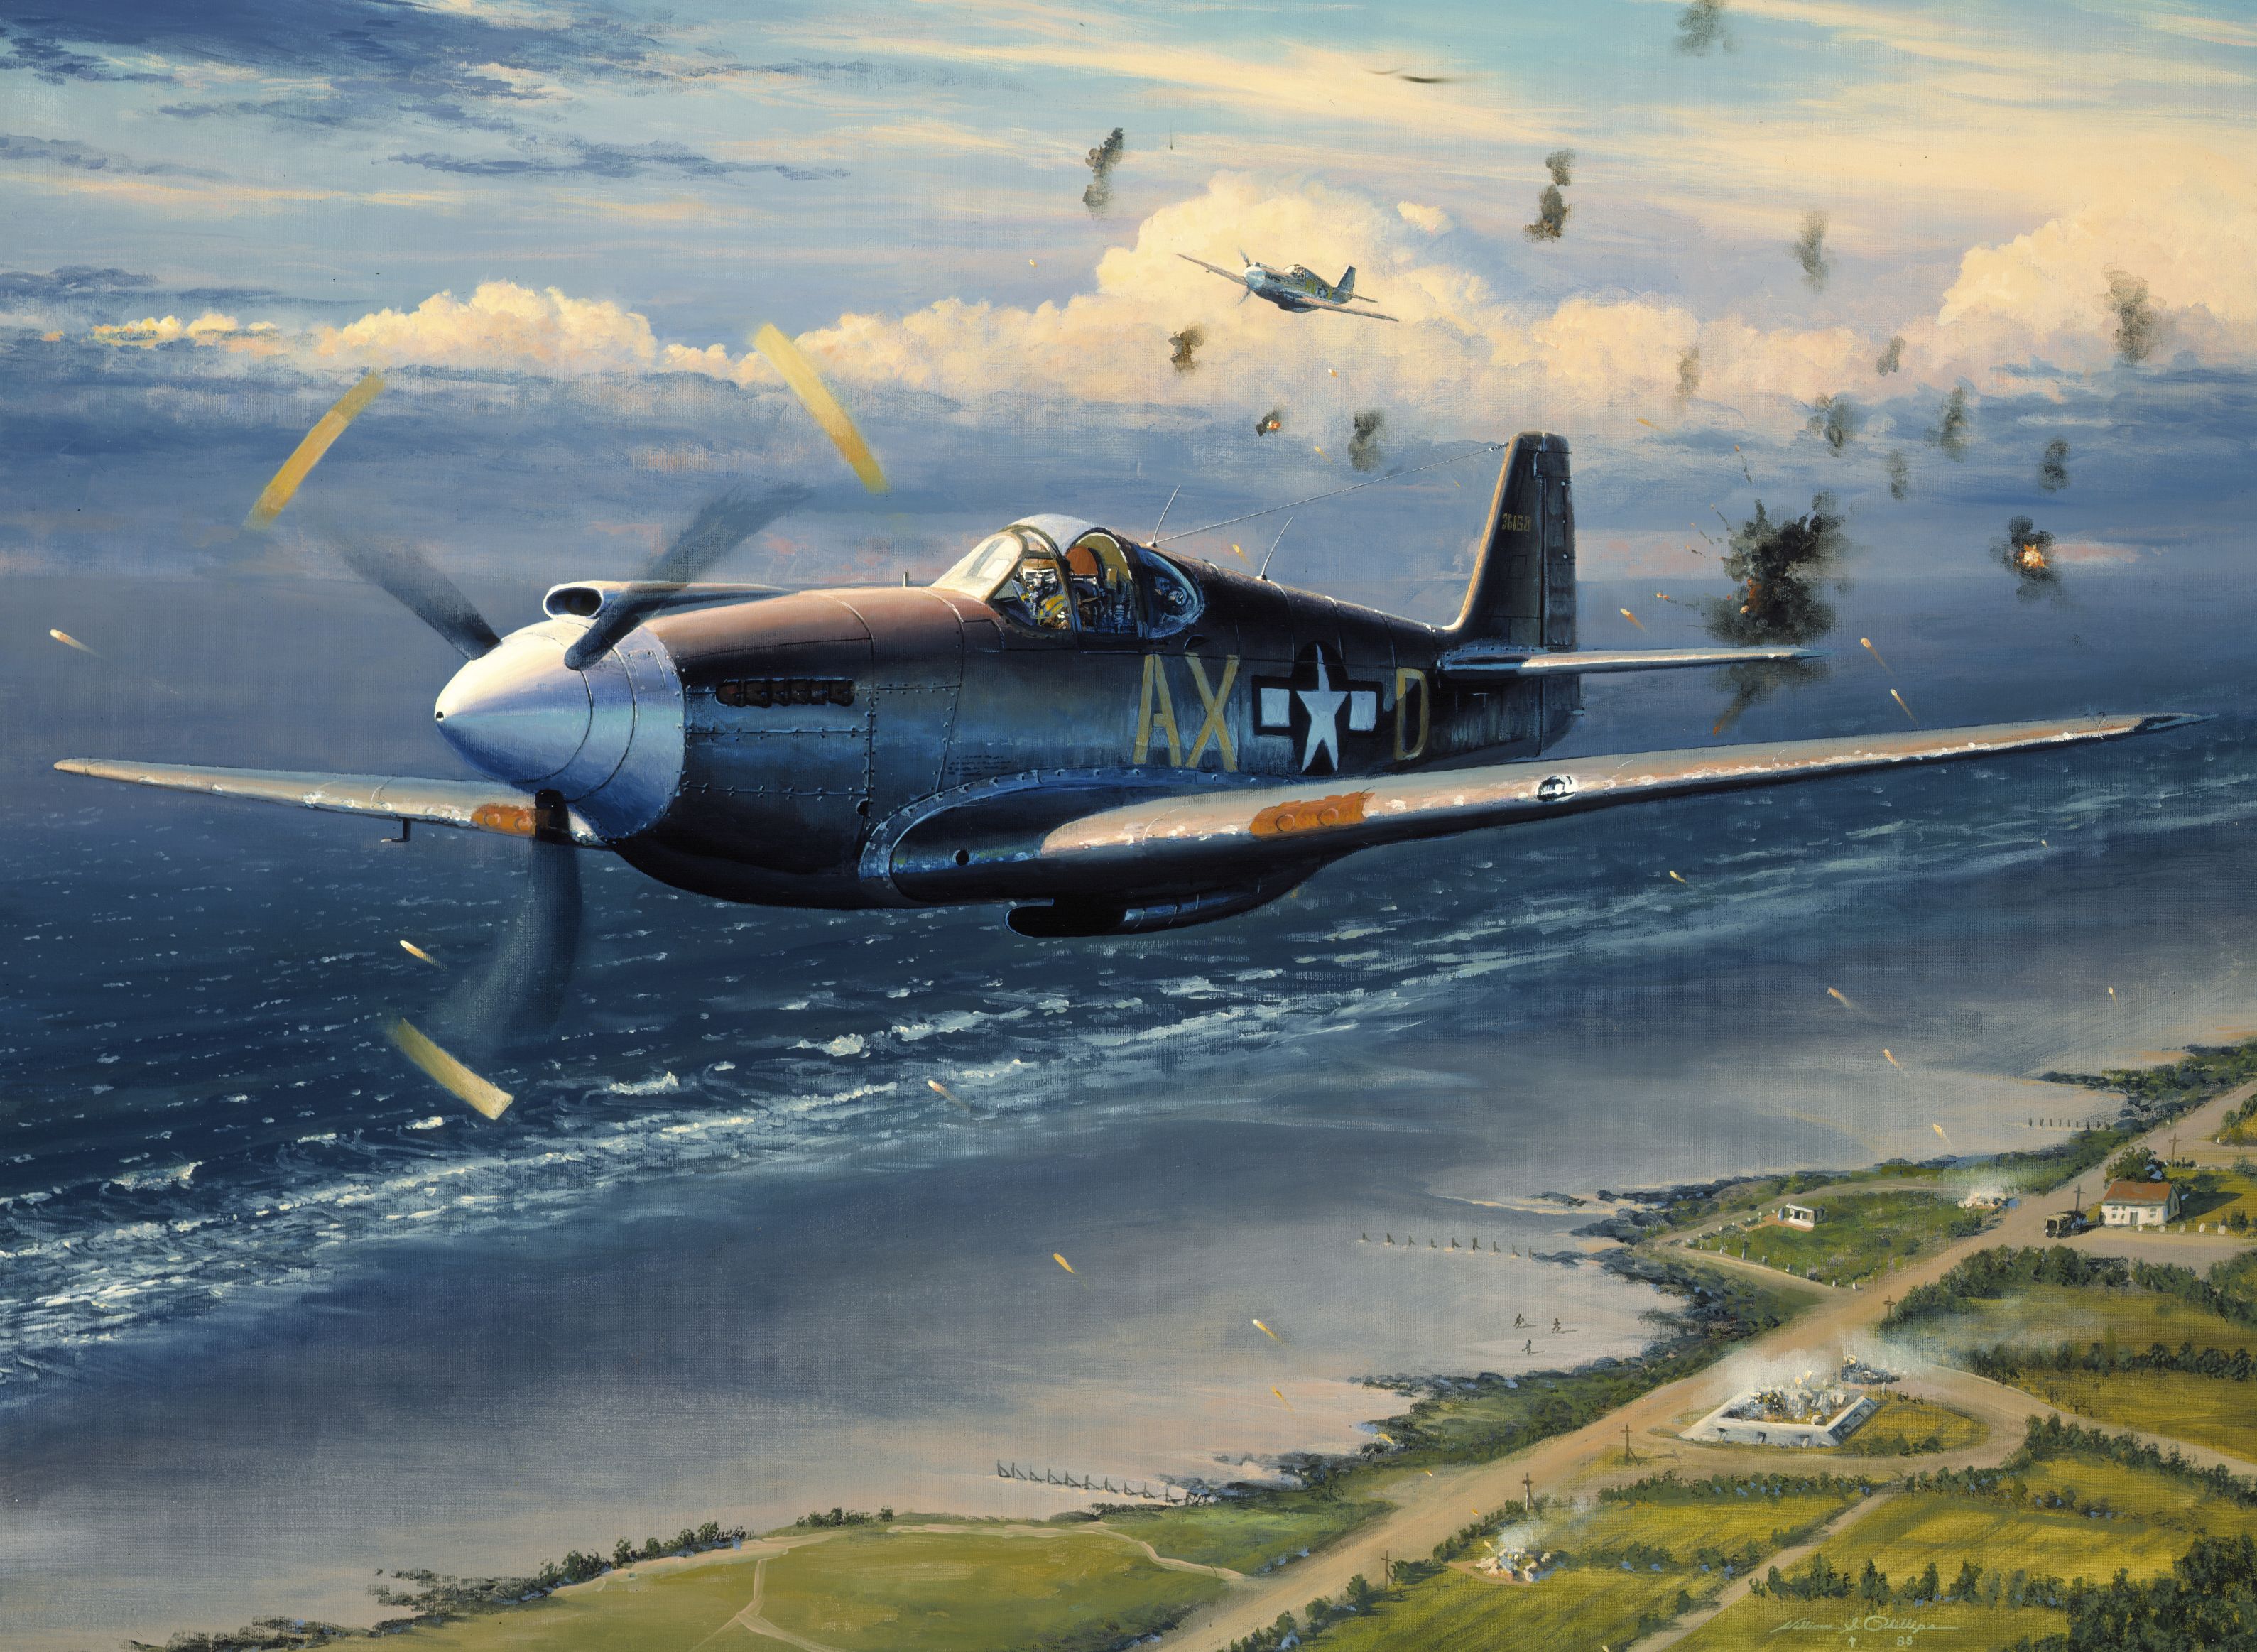 Vintage World War II airplane in high-definition desktop wallpaper.